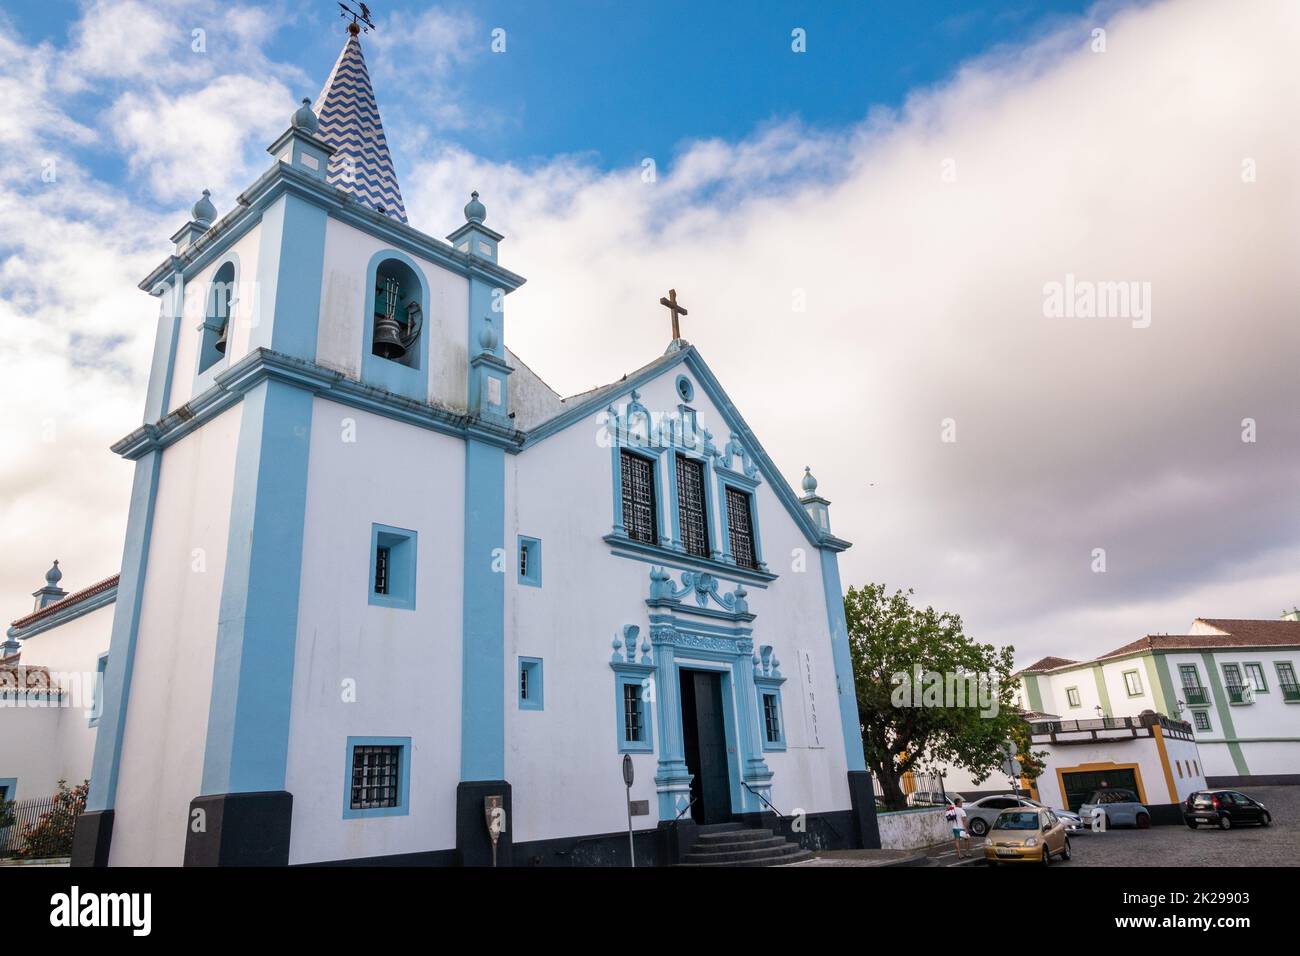 El Santuario de Nuestra Señora de la Concepción, Santuário Nossa Senhora da Conceição, en Angra do Heroismo, Isla de Terceira, Azores, Portugal. Foto de stock